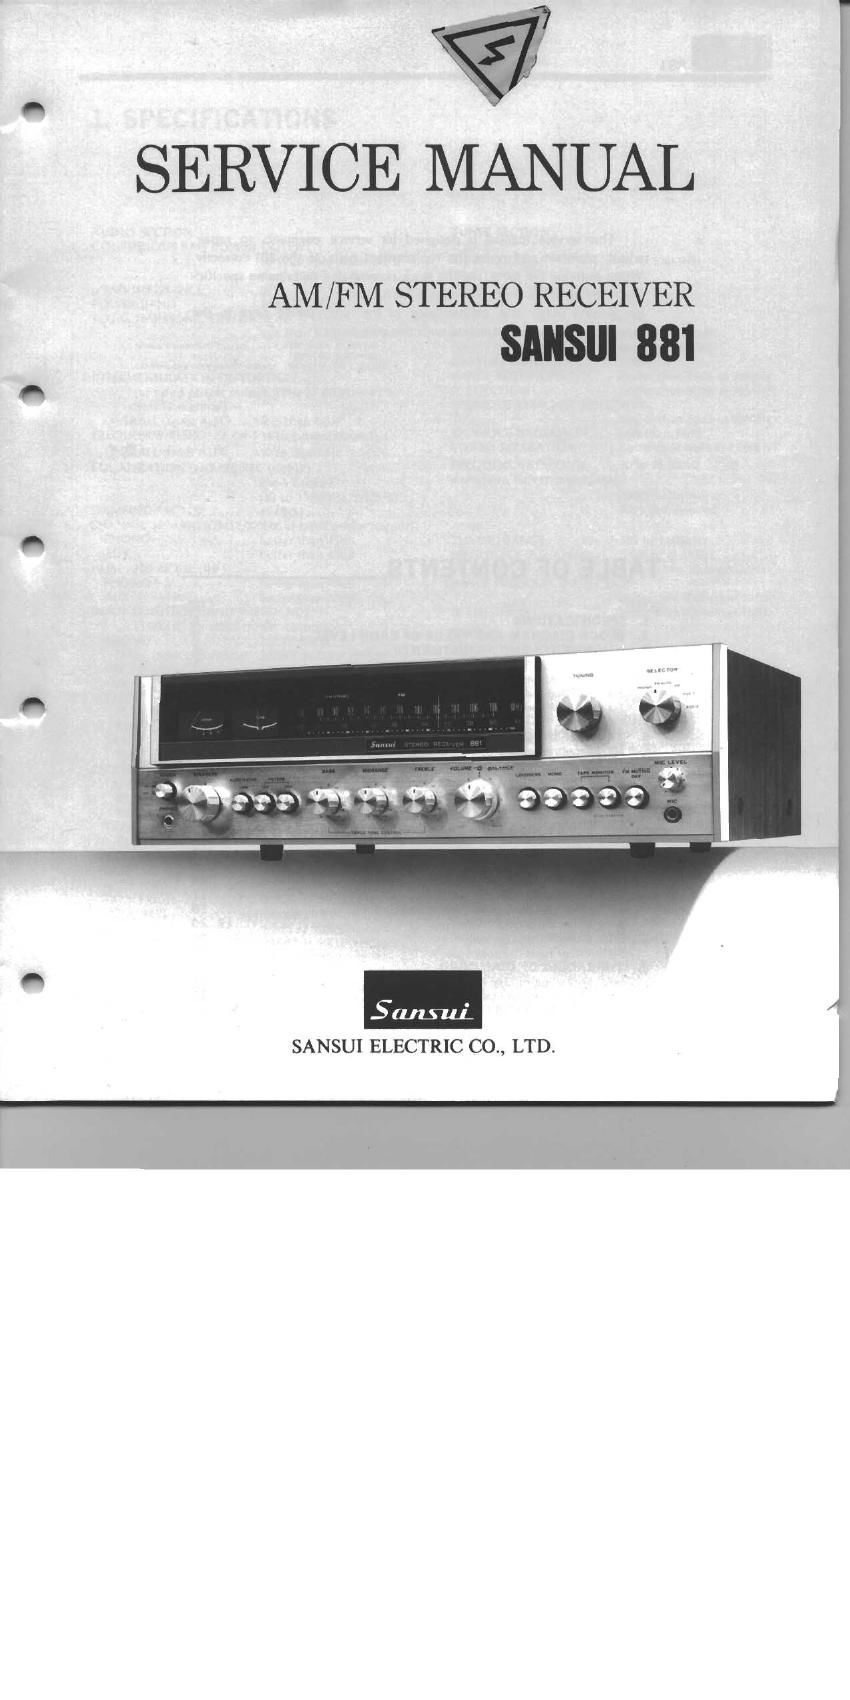 Sansui 881 Service Manual